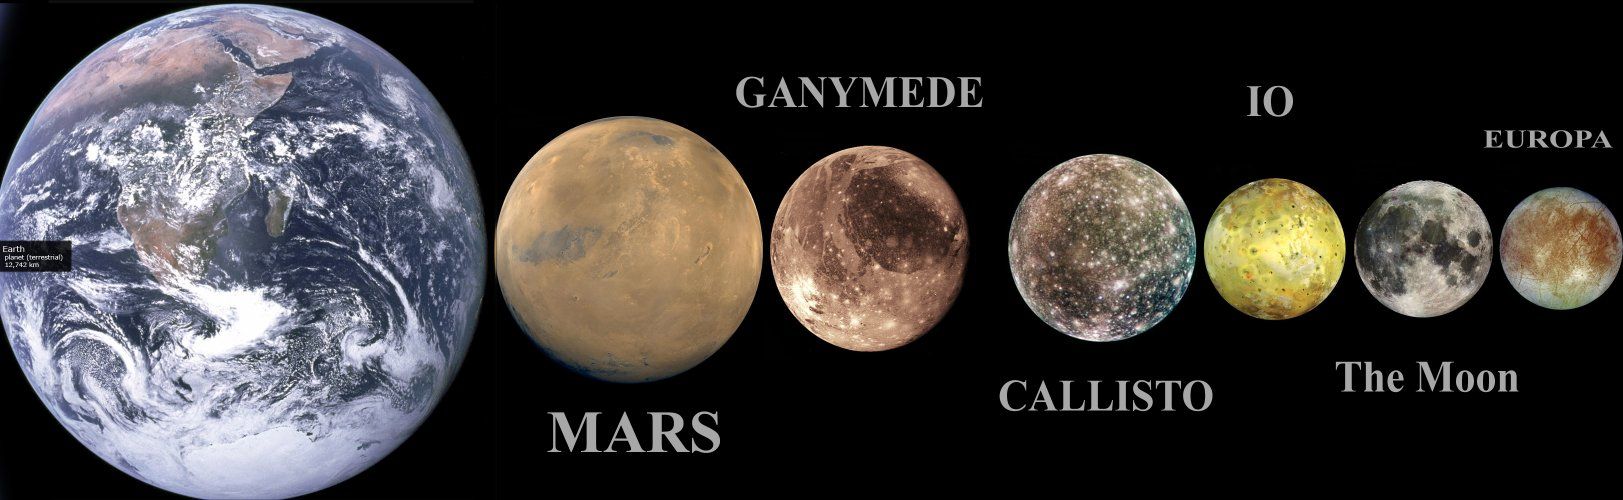 Ганимед, сравнен с Марс и Земята